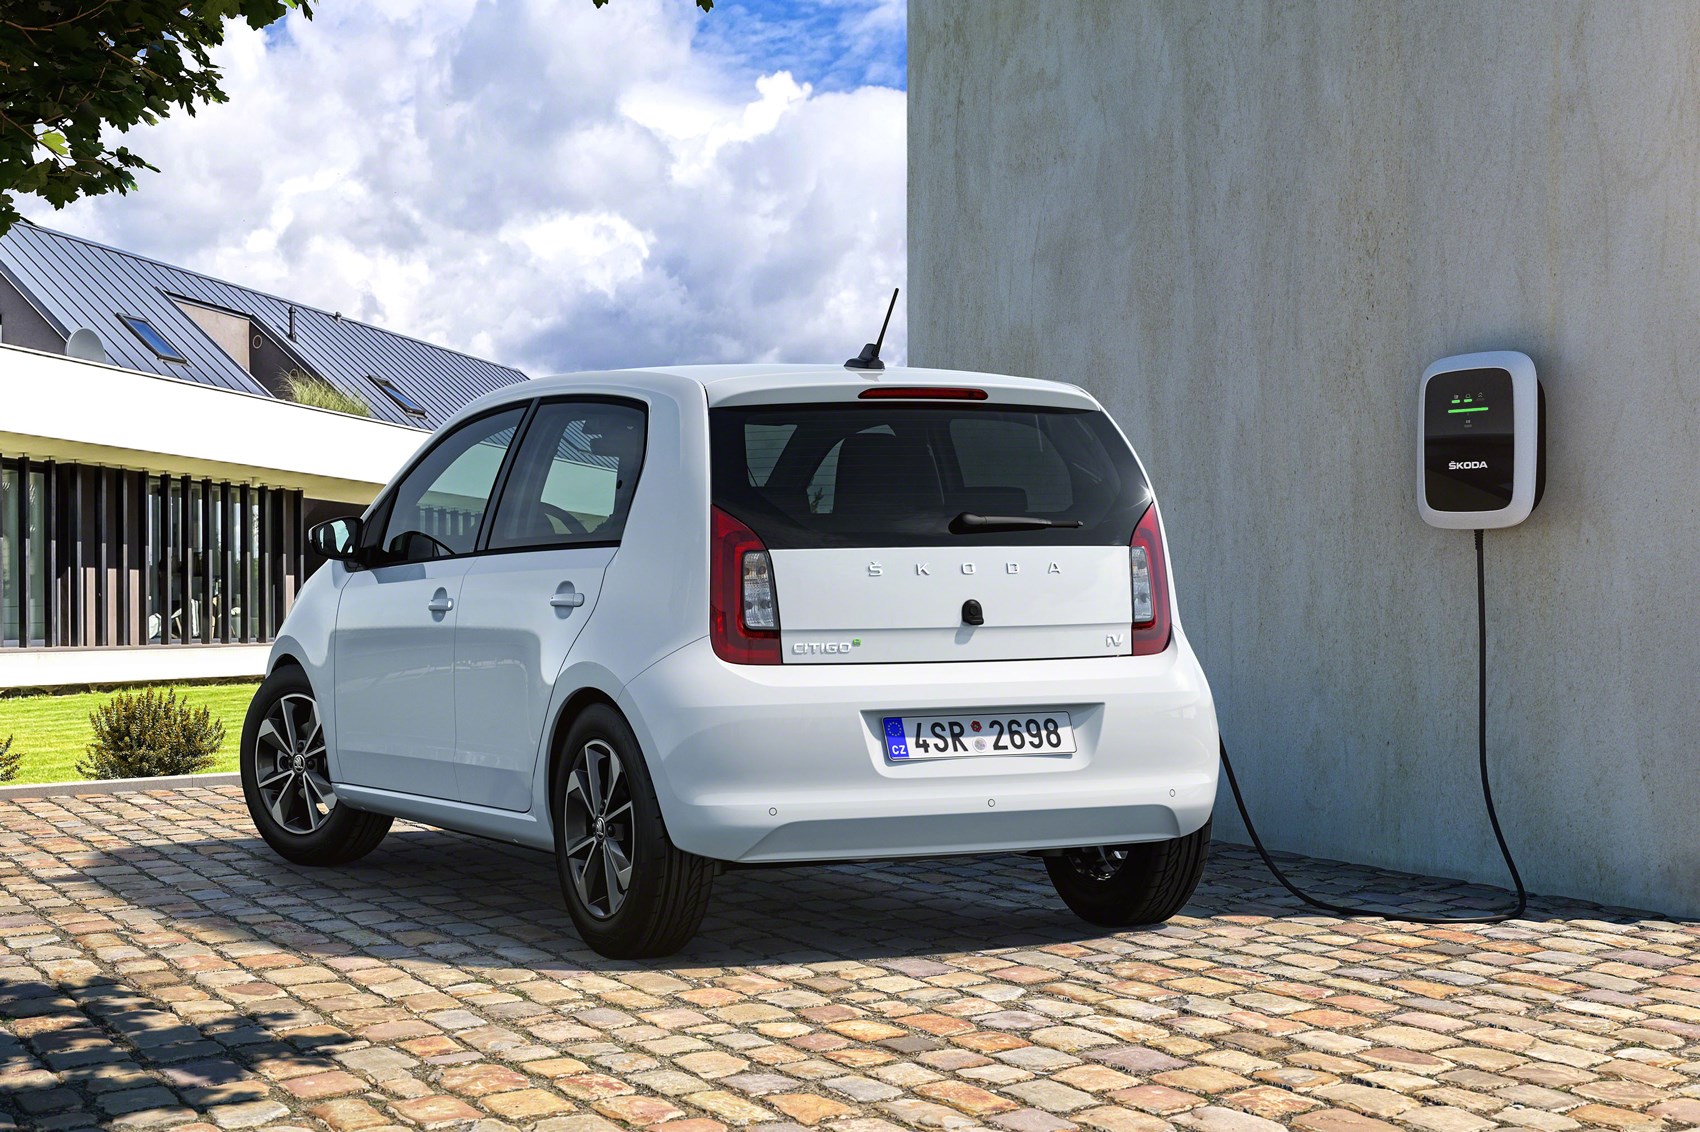 Skoda Citigo-e iV: all-electric city car revealed